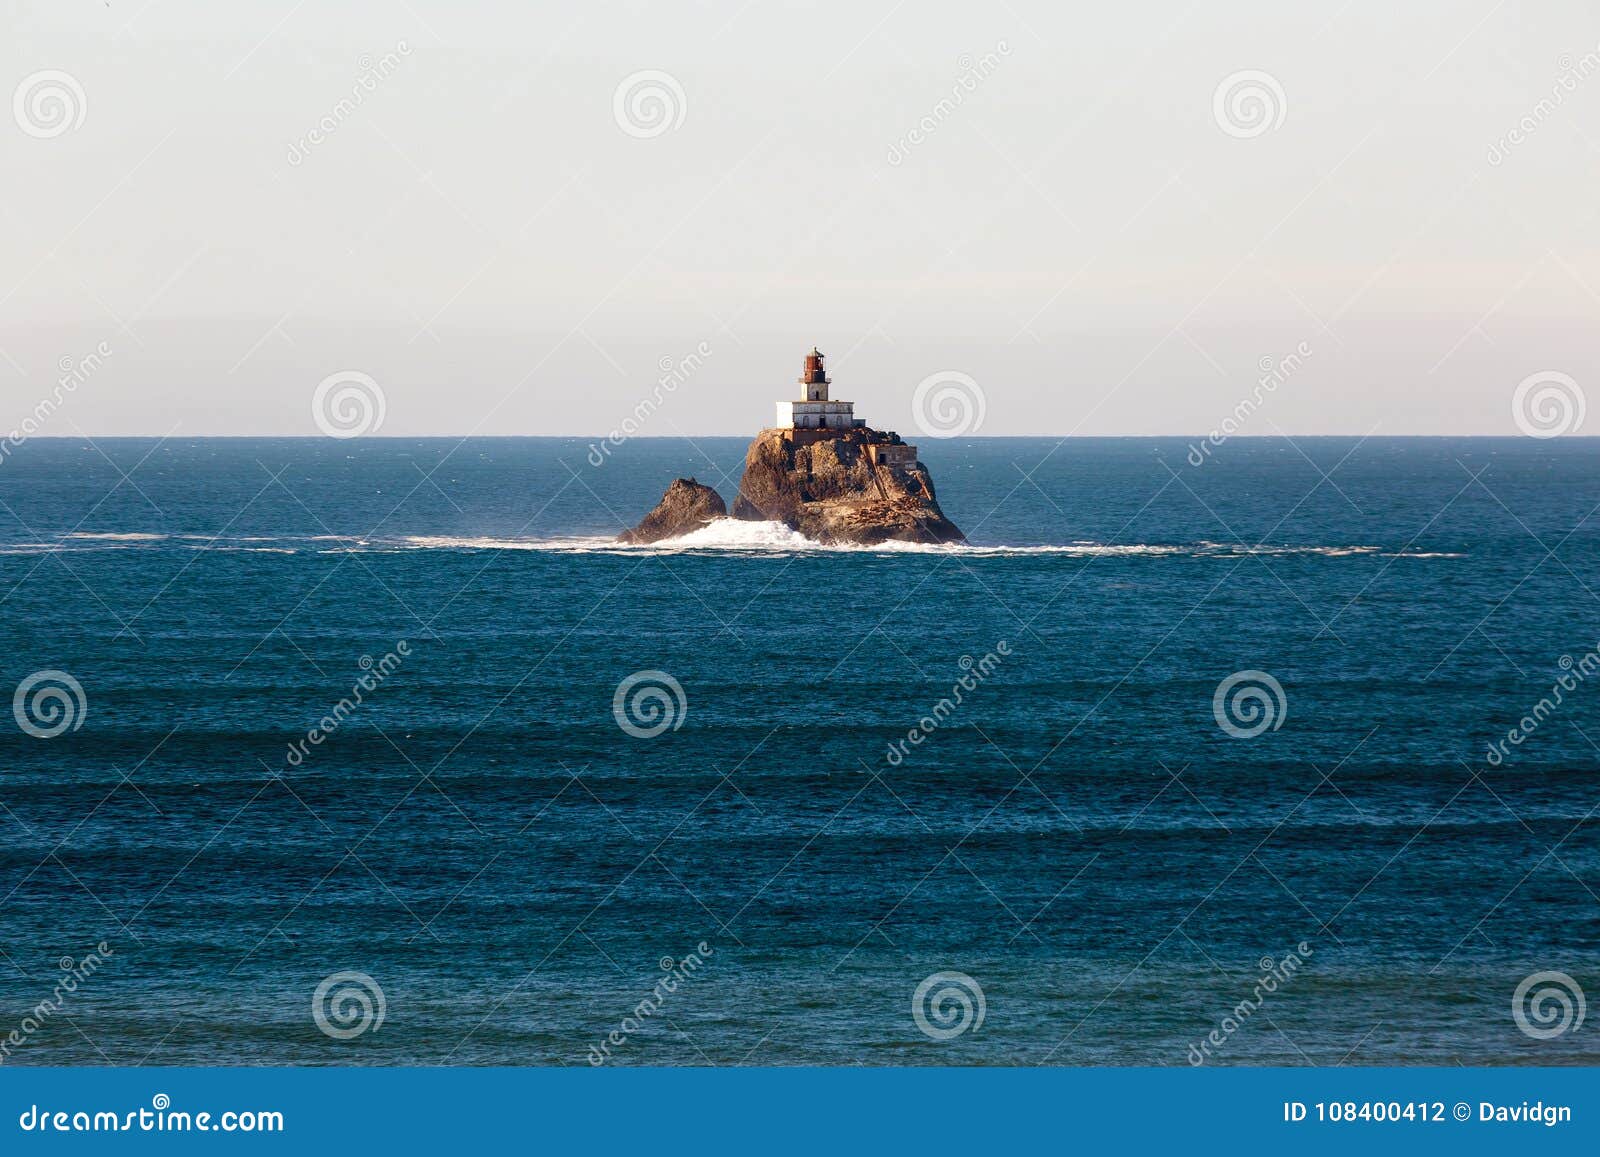 tillamook rock lighthouse on a calm day